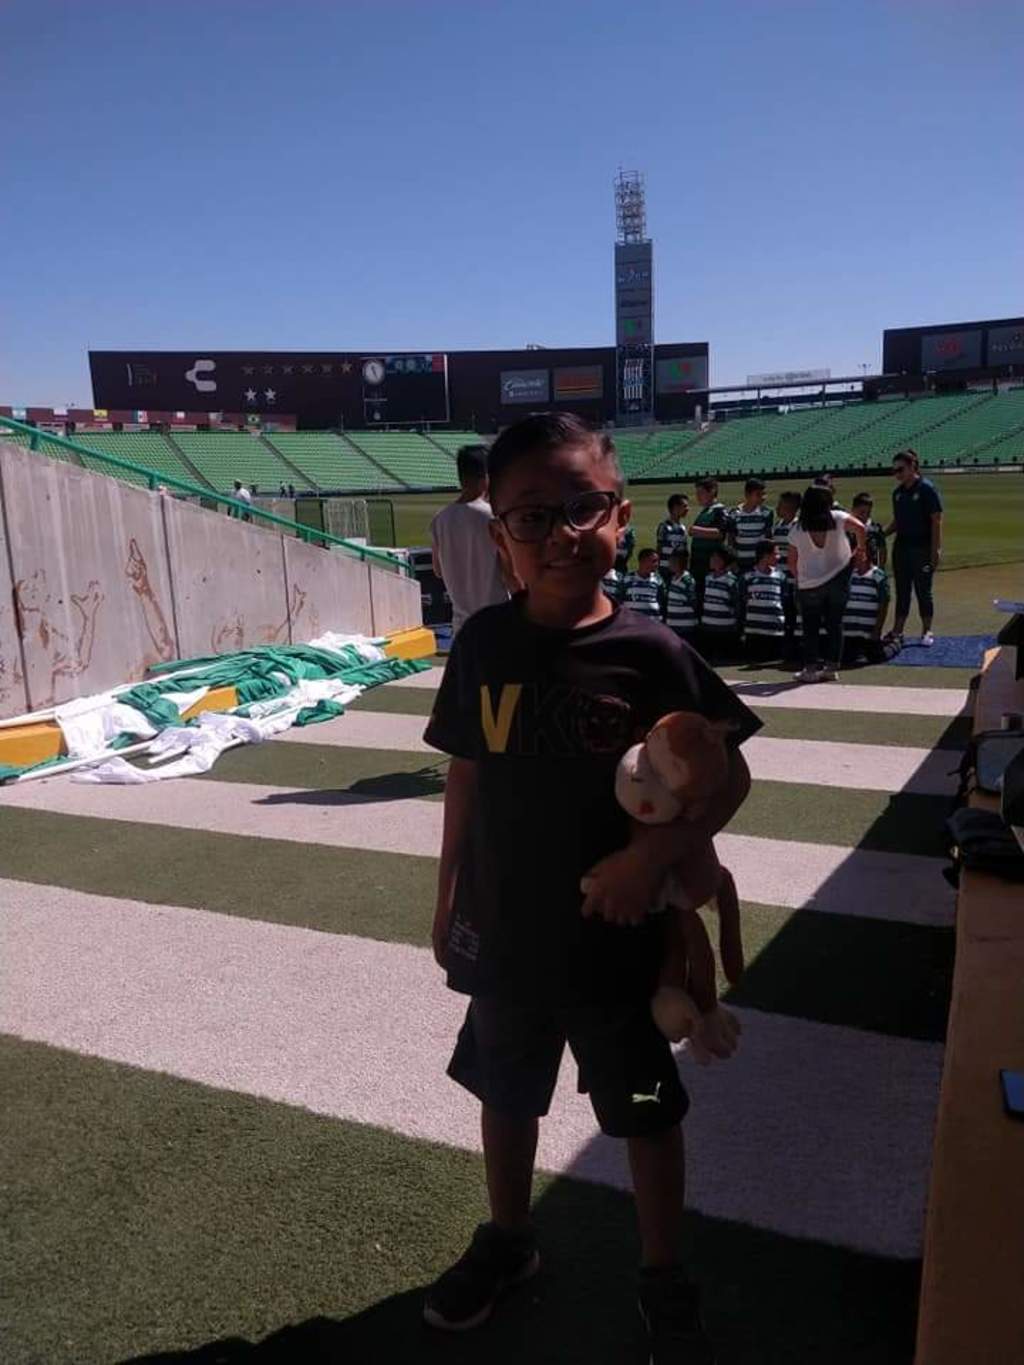 Al pequeño le gusta mucho jugar futbol y su jugador favorito es Julio César Furch, delantero del Santos, a quien le gustaría conocer. (CORTESÍA)